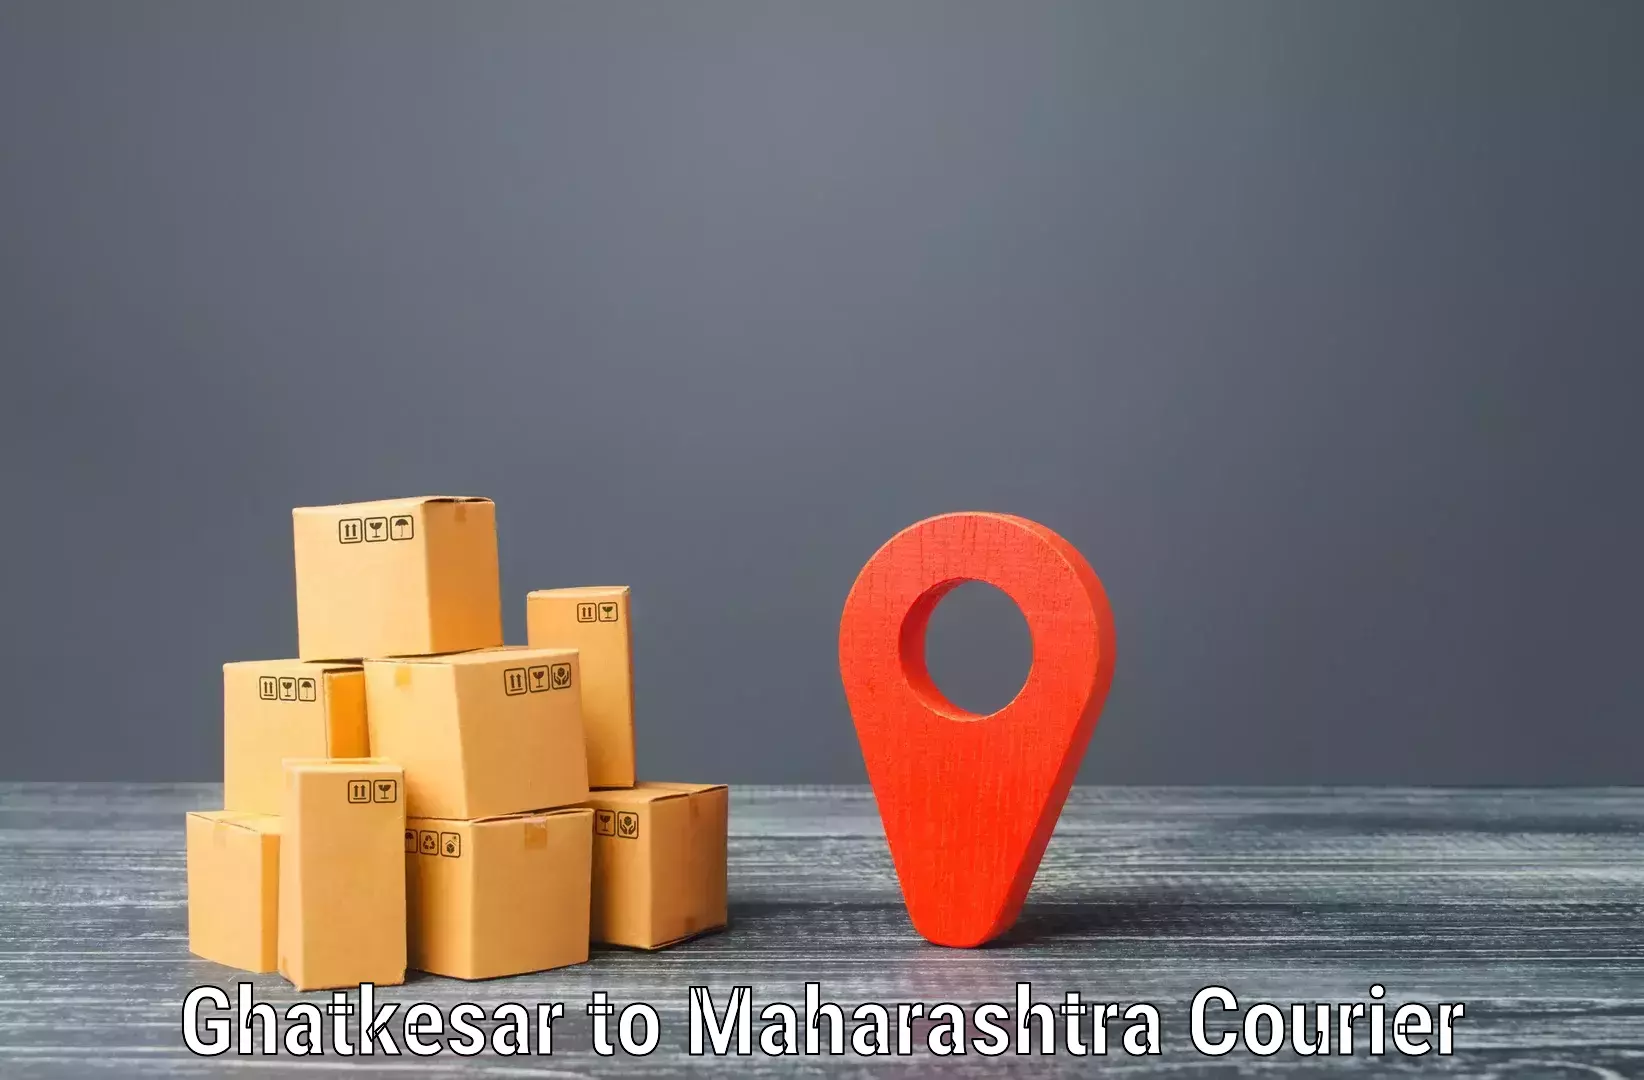 Courier service comparison Ghatkesar to Nagpur